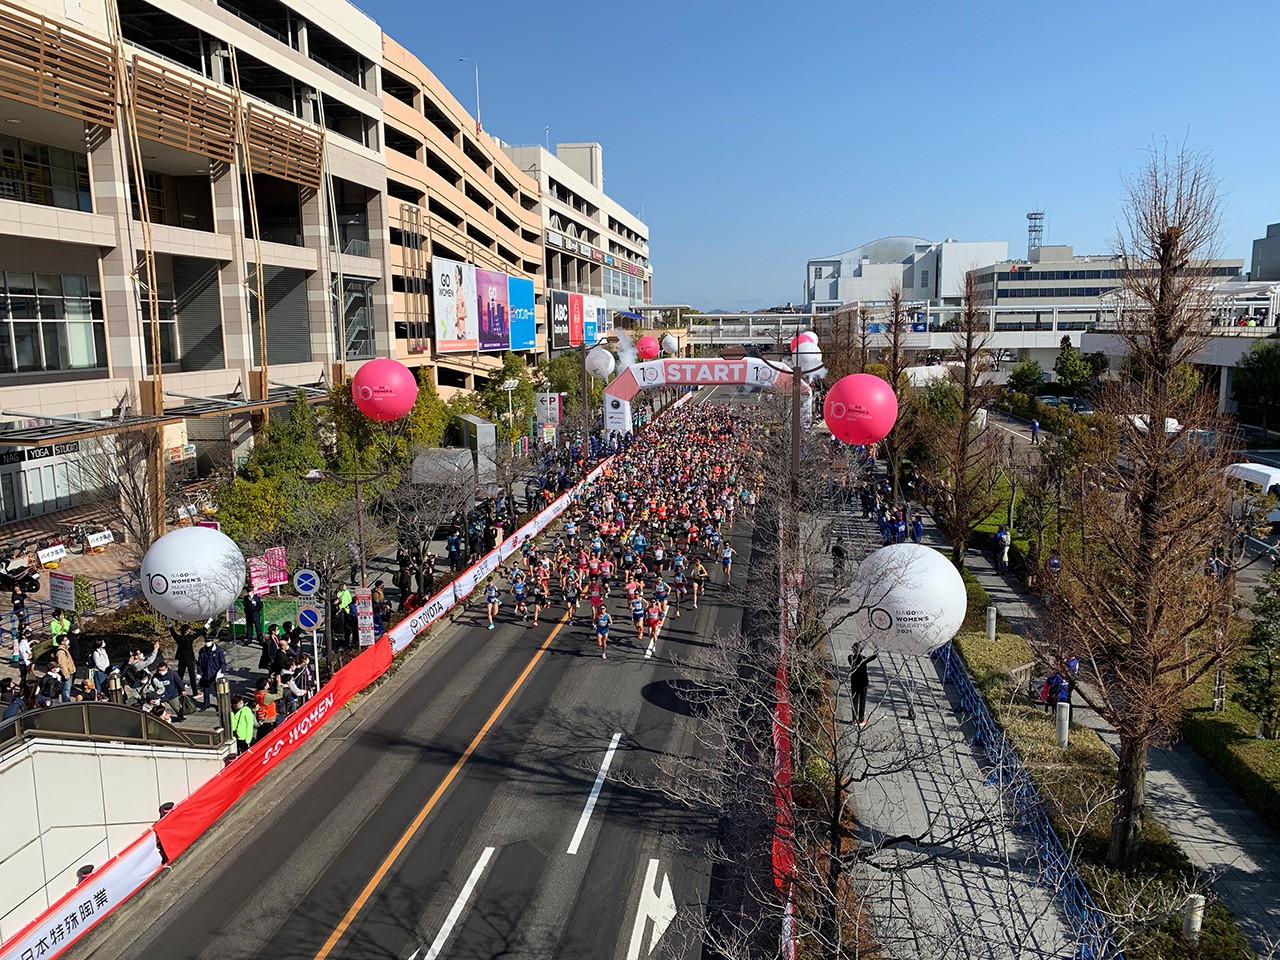 Nagoya Women's Marathon